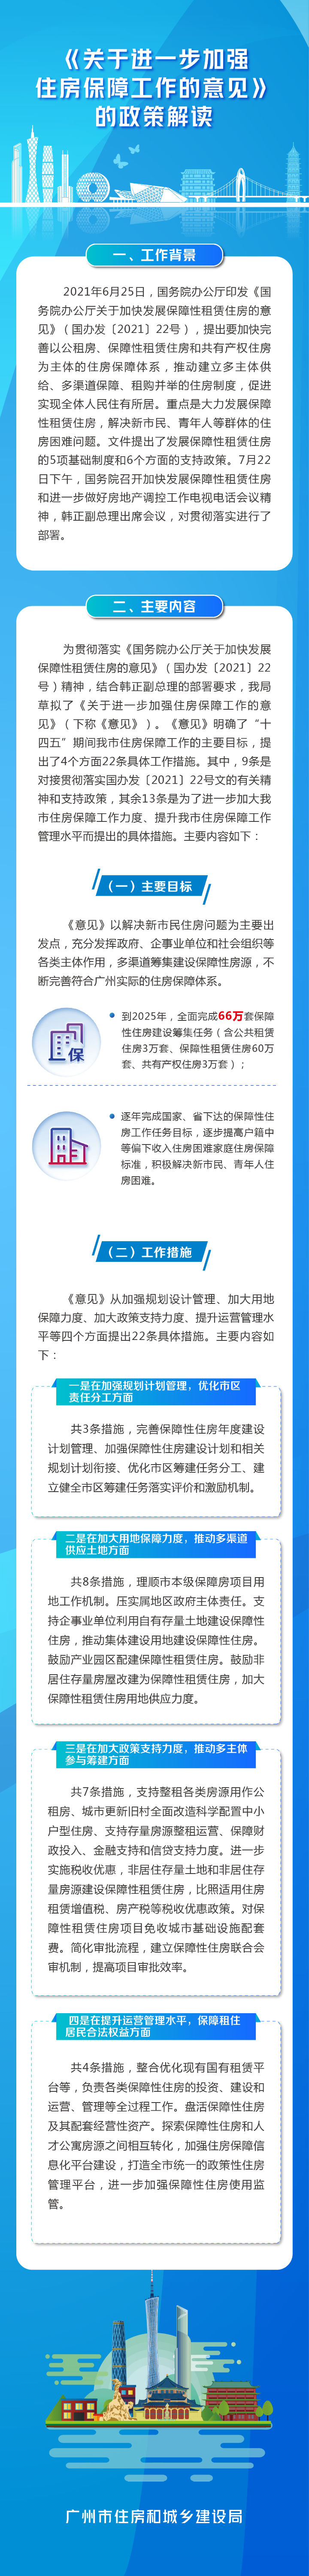 《广州市人民政府办公厅关于进一步加强住房保障工作的意见》的政策解读.jpg